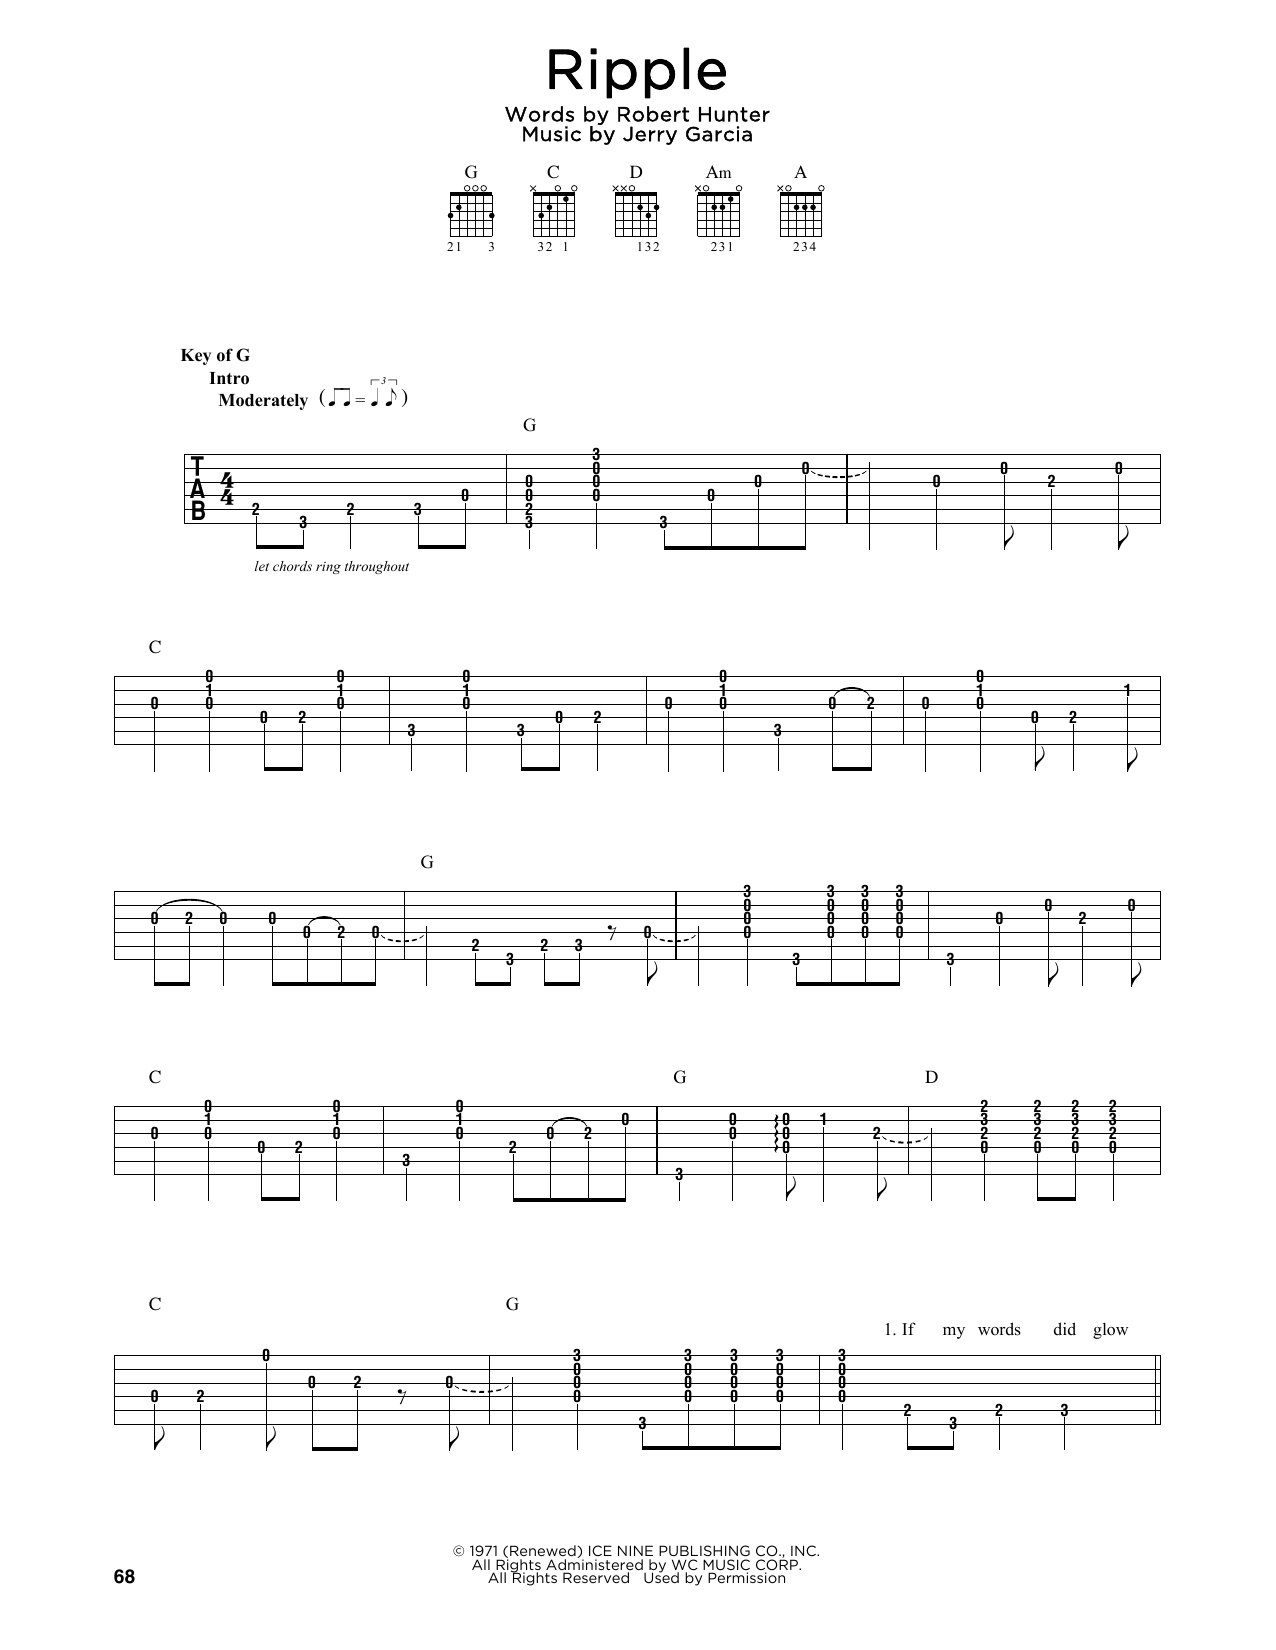 Grateful Dead Ripple Sheet Music Notes & Chords for Ukulele - Download or Print PDF